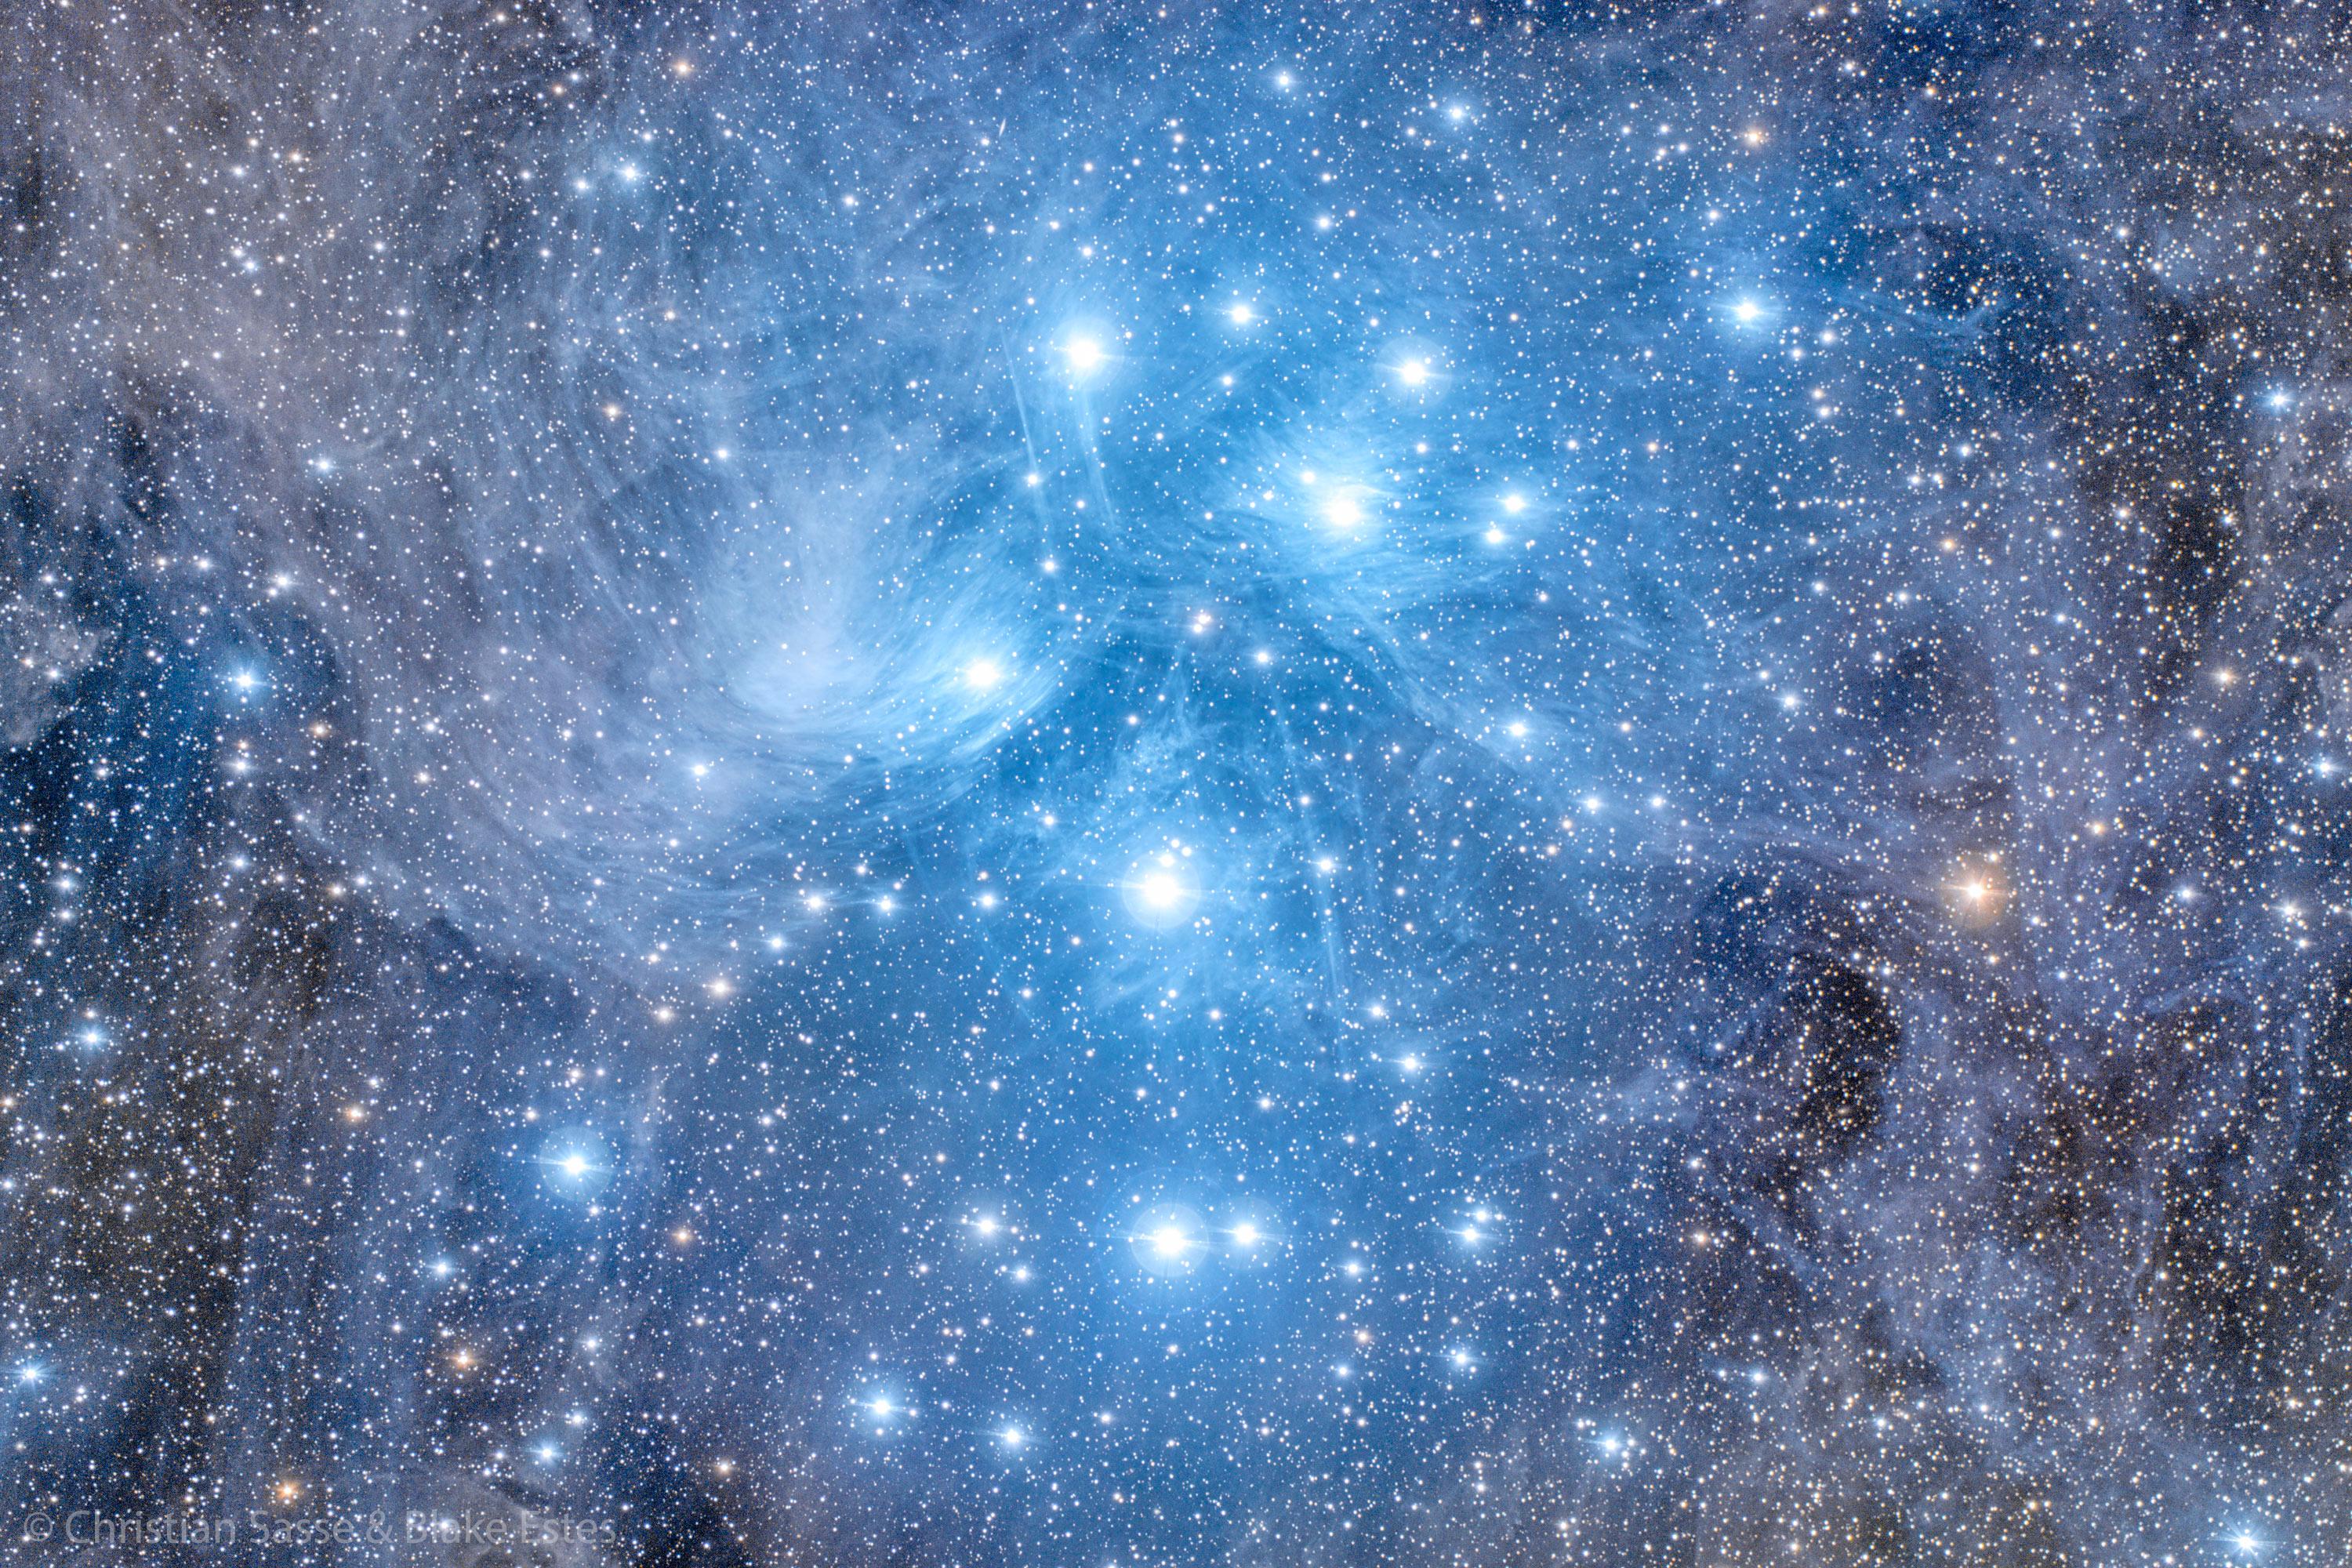 العديد من النجوم الزرقاء مجتمعة معاً في عنقودٍ من الغبار والغاز المتوهّج بالأزرق.